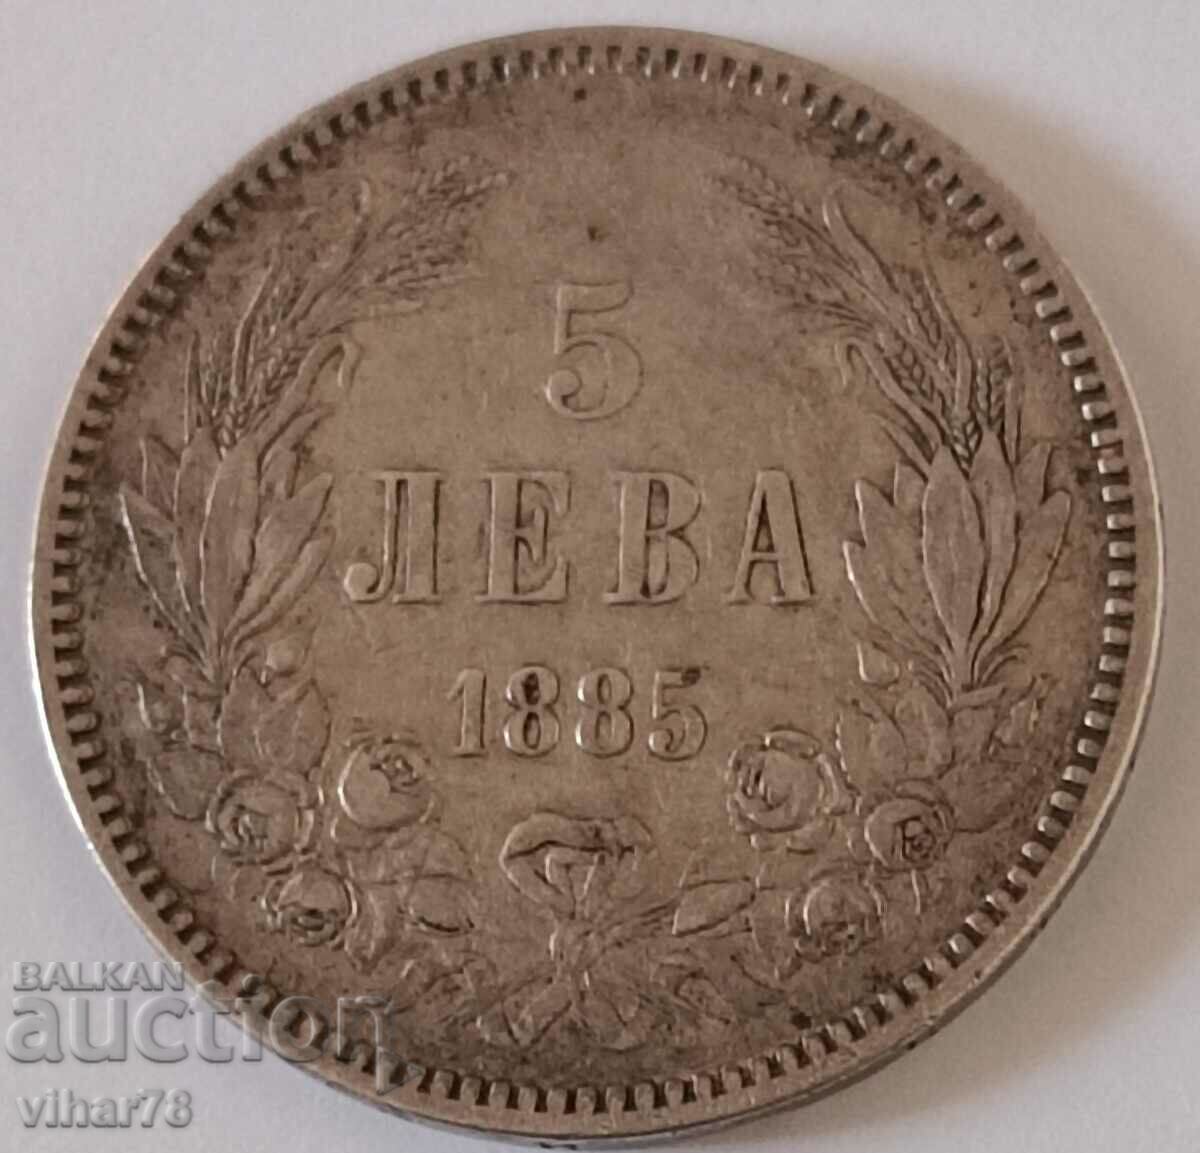 Сребърна монета 5 лева 1885 година